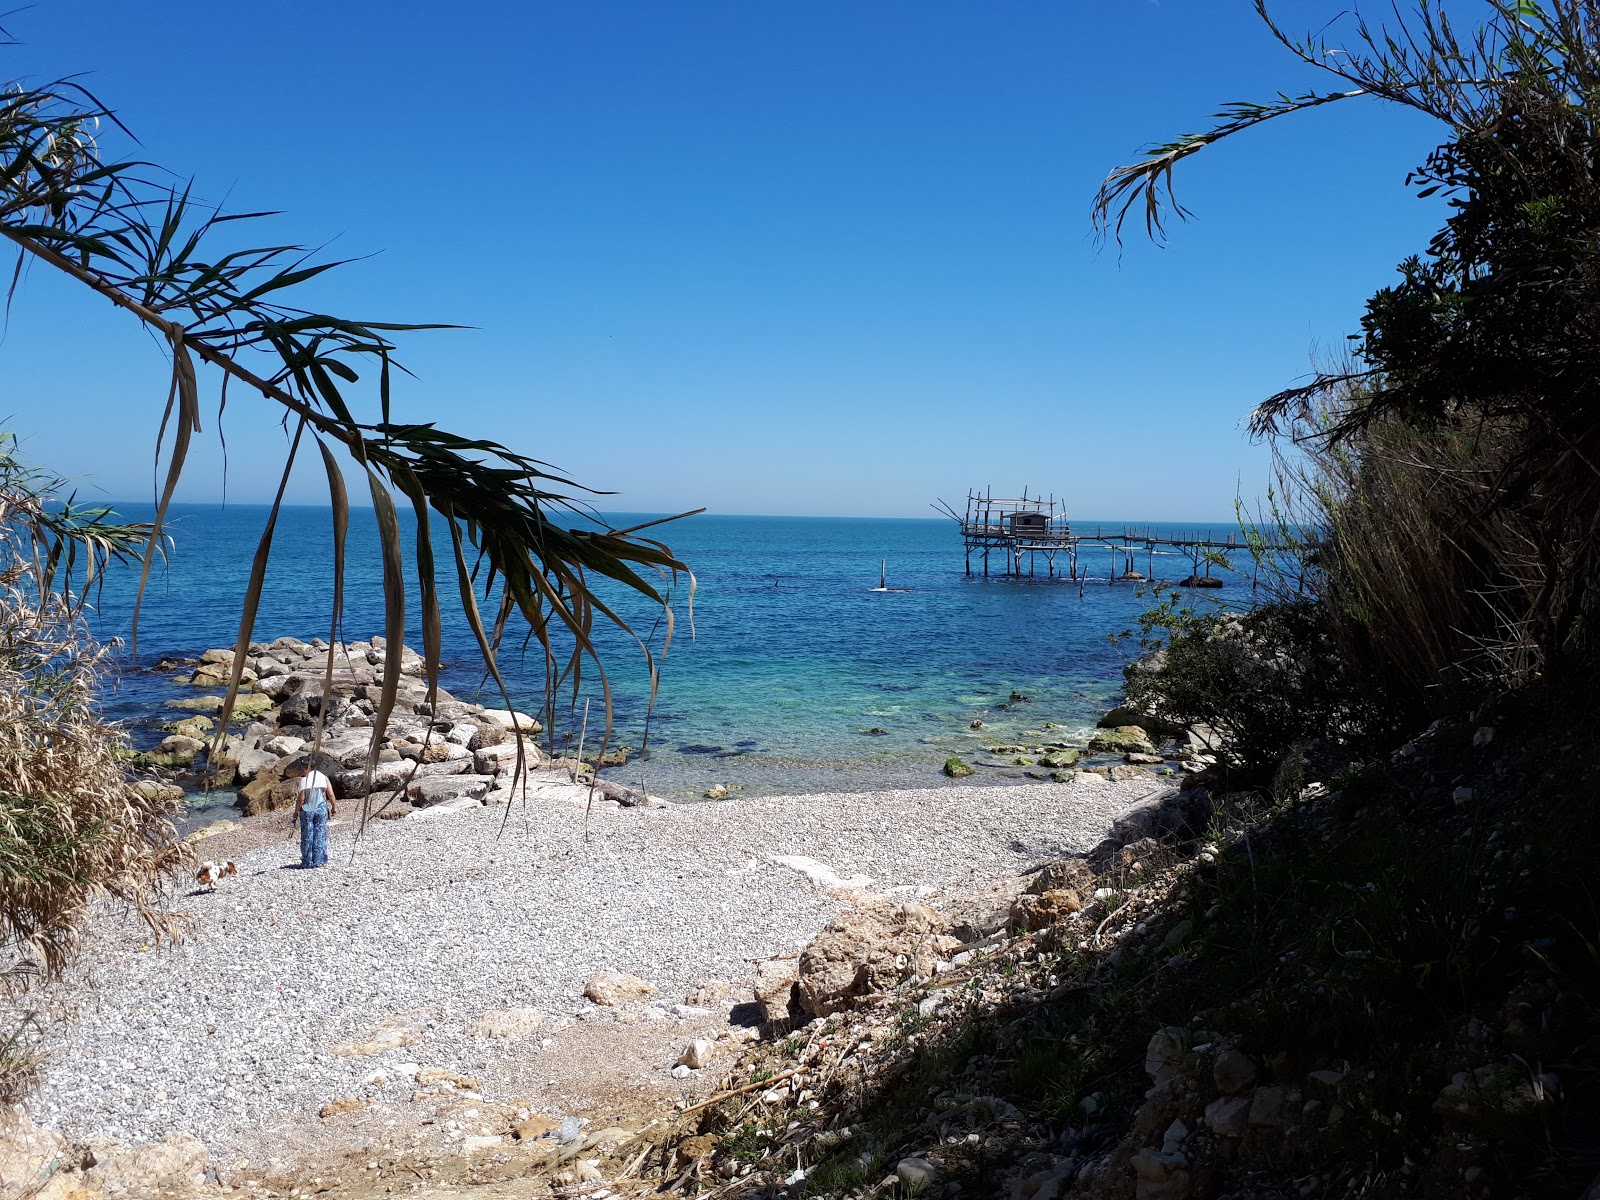 Foto von Spiaggia di Calata Turchino wilde gegend